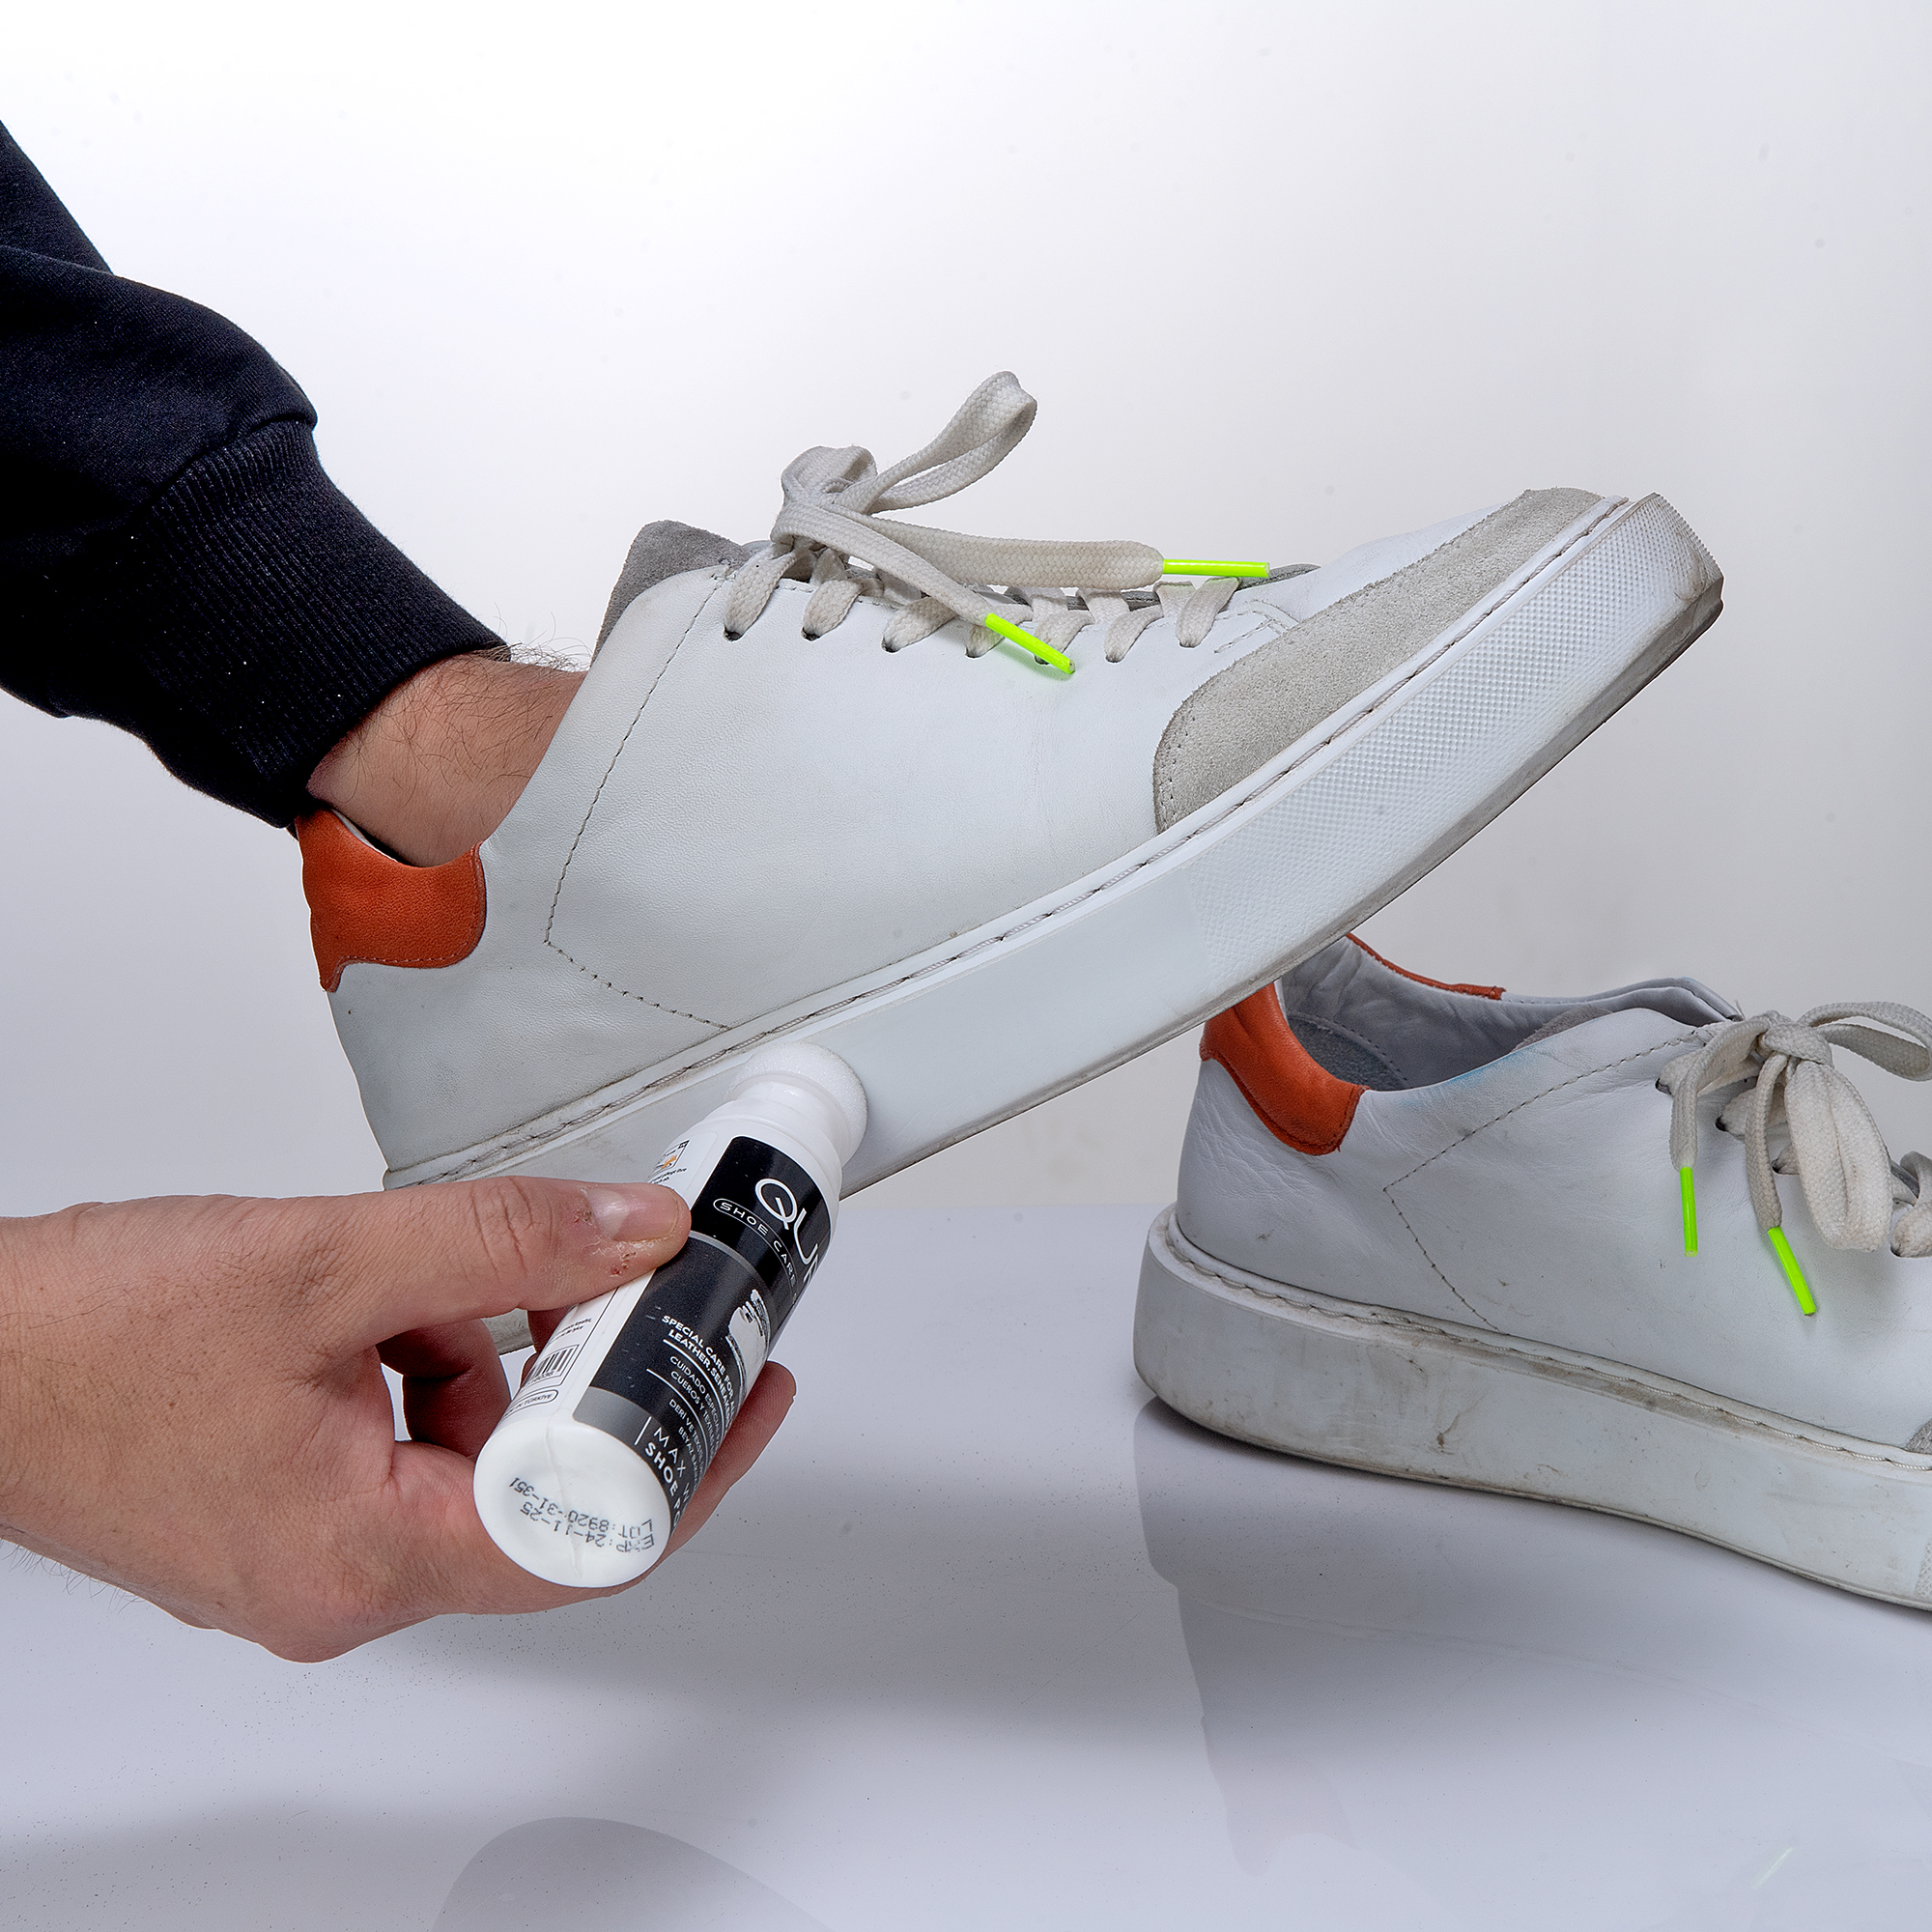 QUFY Shoe Cleaner Sneakers Kit Foam Shoe Cleaner Microfiber Shoe